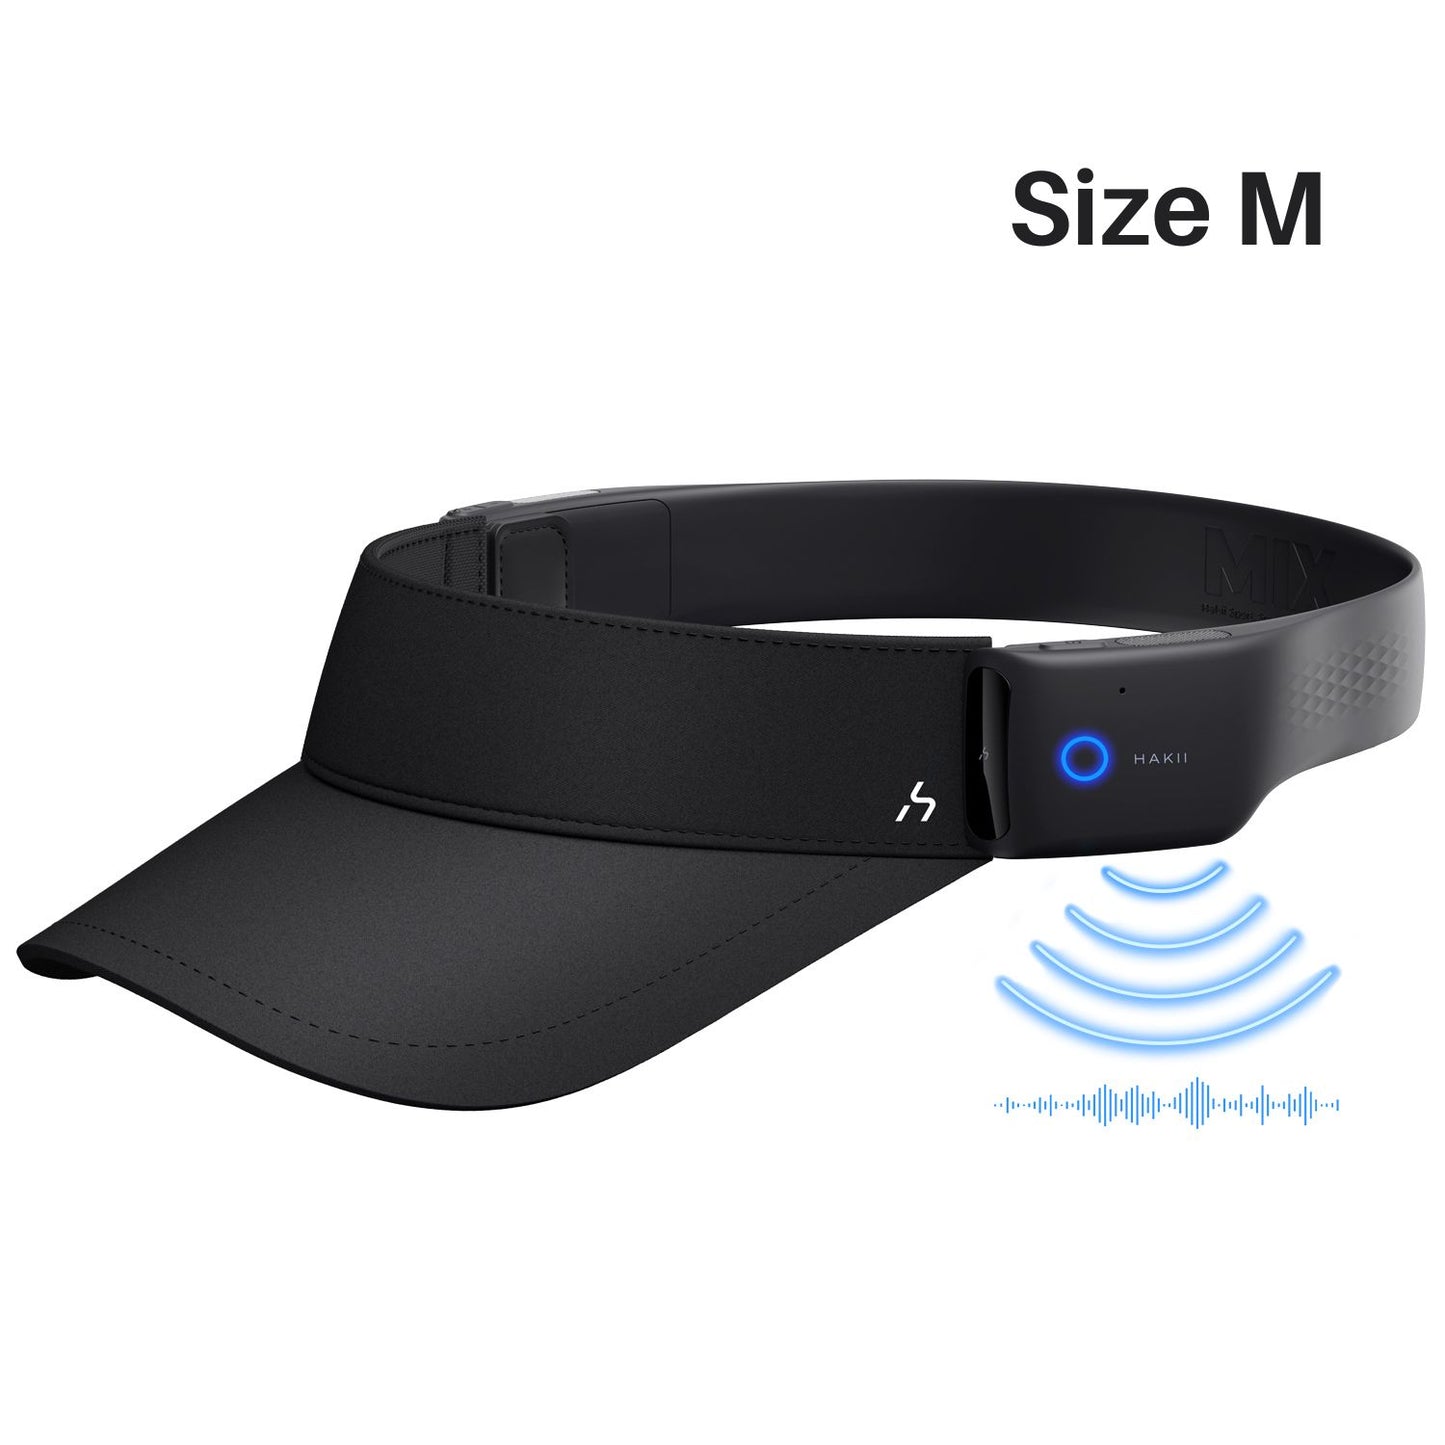 HAKII MIXV Smart Bluetooth Visor Headphones (Black)